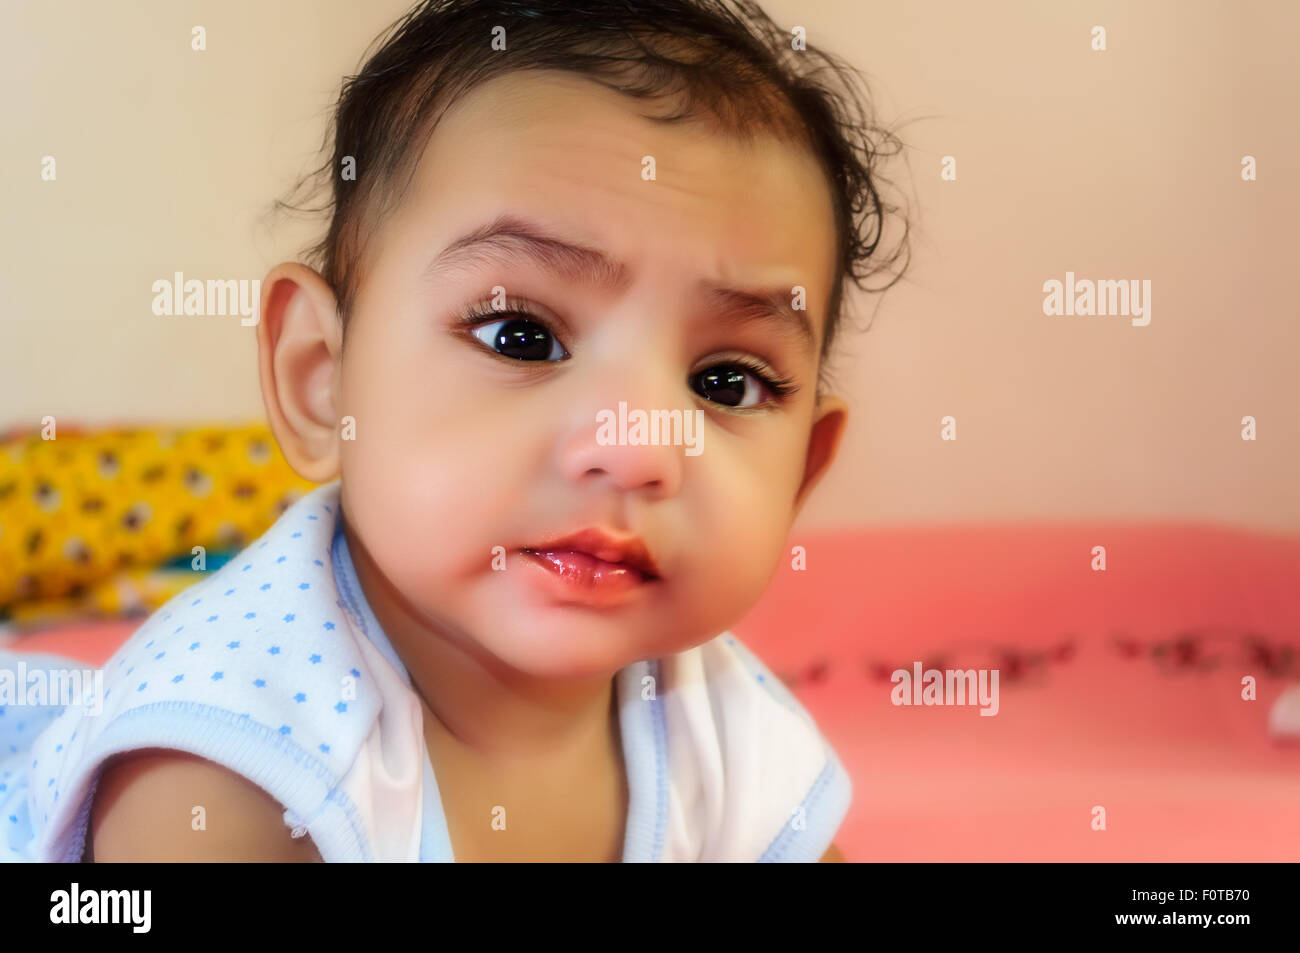 Porträt eines niedlichen kleinen bengalischen jungen in verschiedenen Stimmungen mit Closeup, Textfreiraum Stockfoto